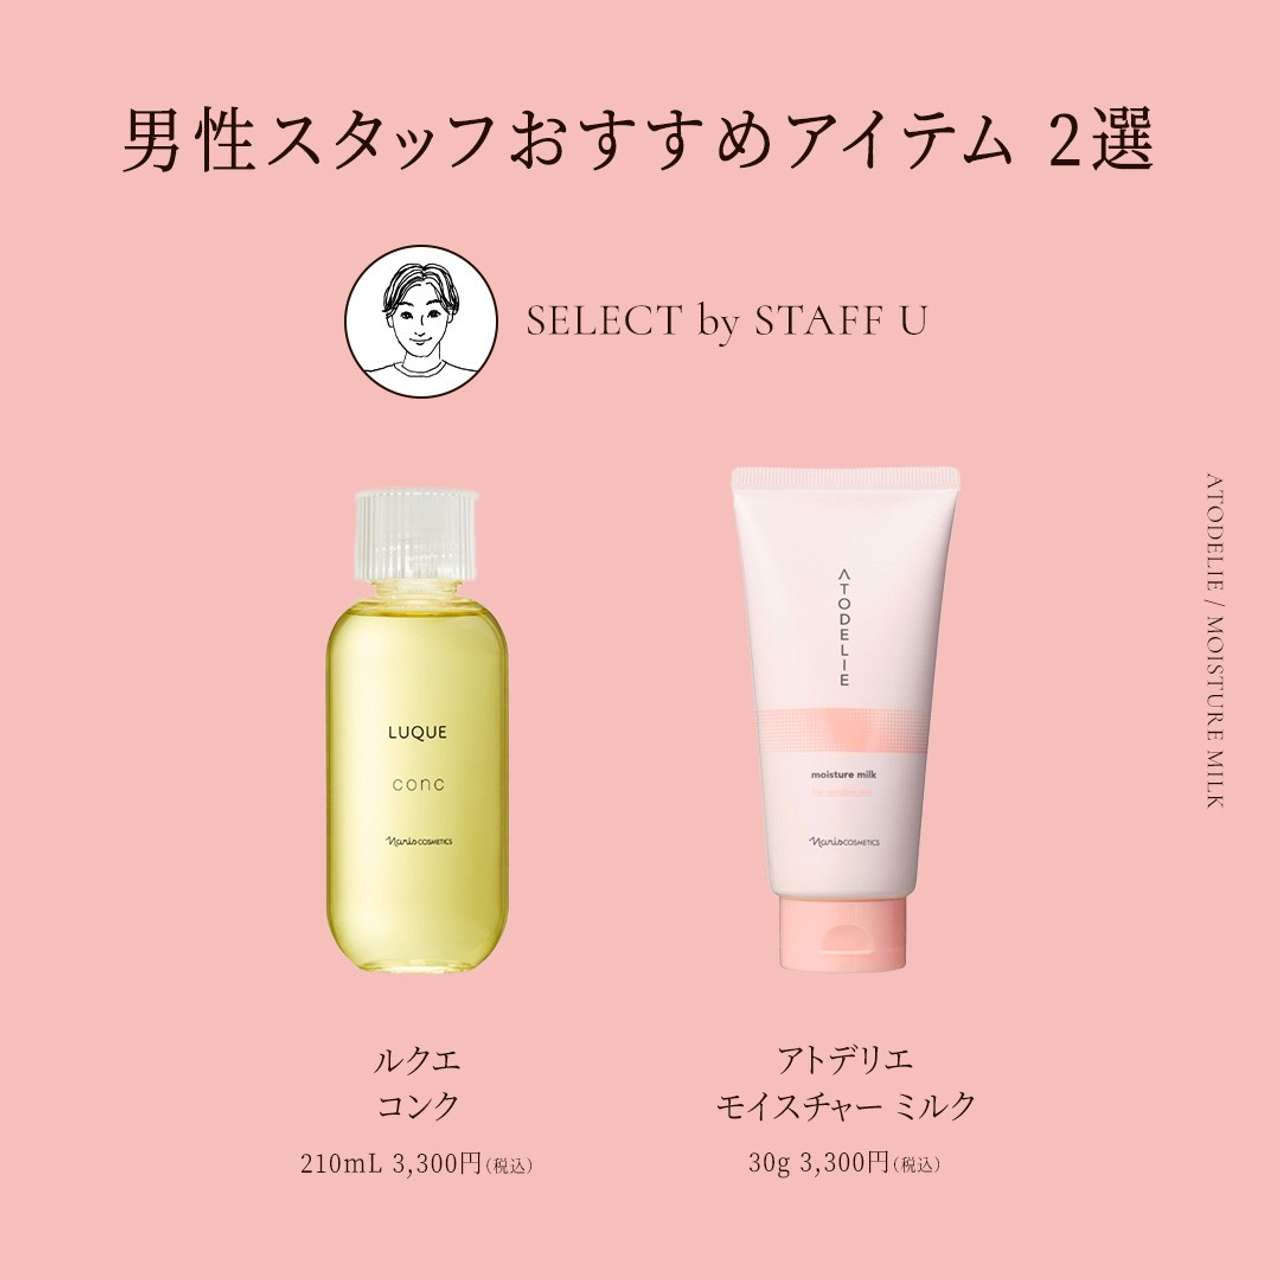 ナリス化粧品 マジェスタ ローション Ⅱ （保護化粧水） 180mL✖️2本 